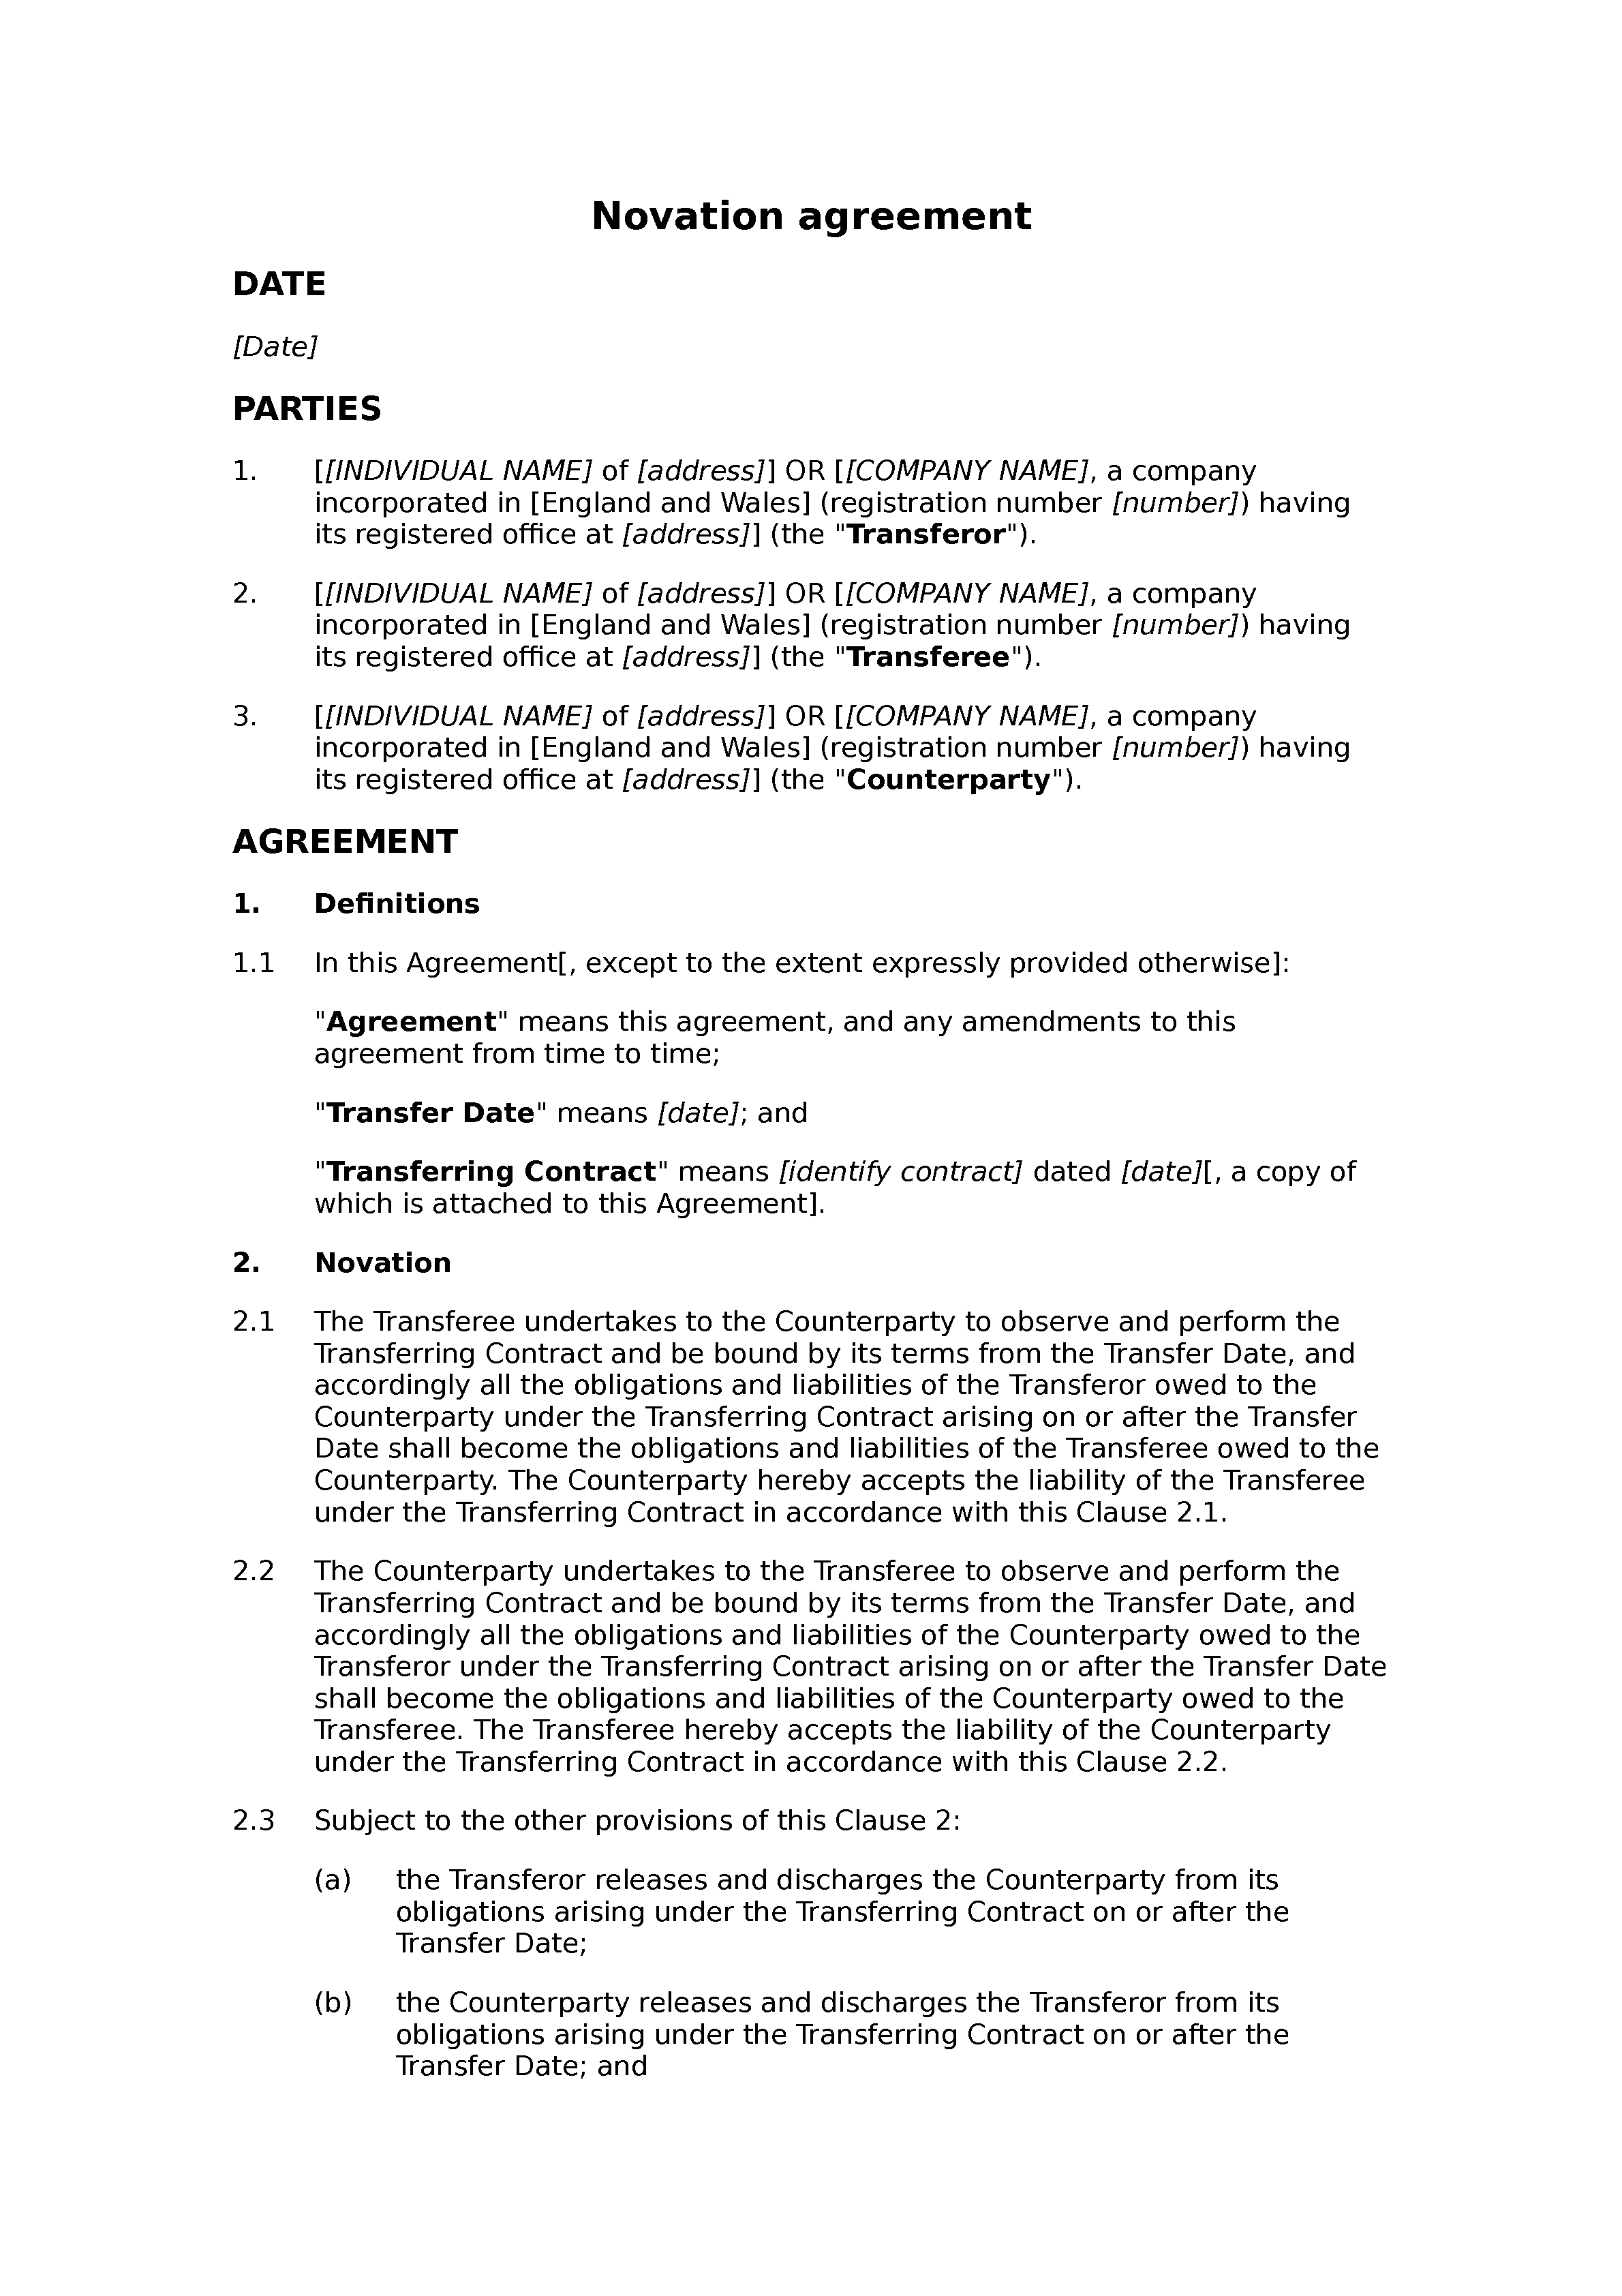 assignment novation agreement